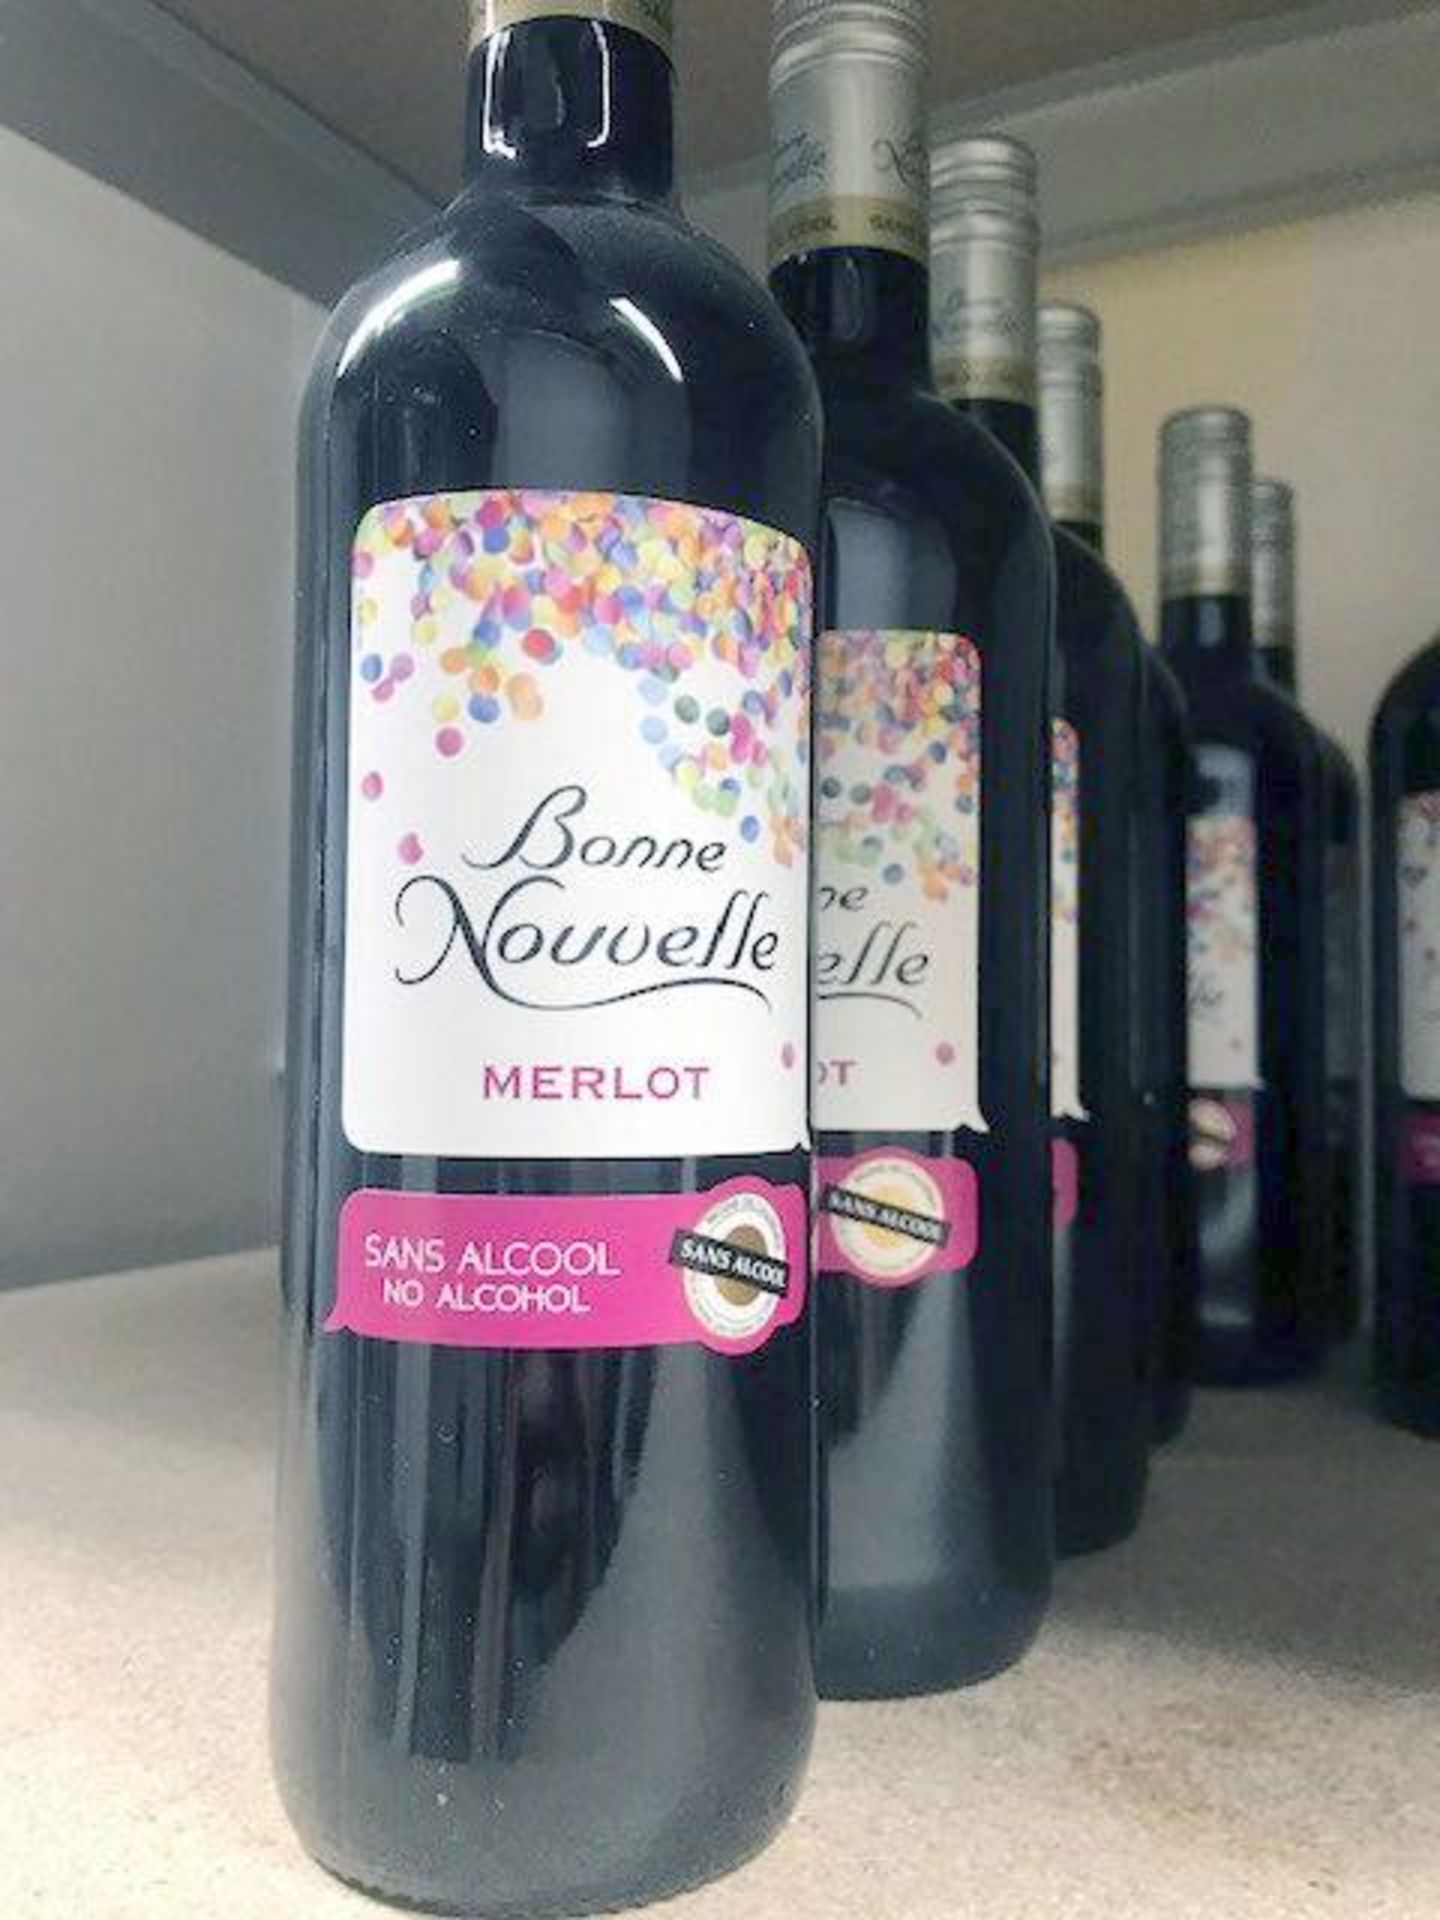 Bonne Nouvelle Merlot Sans Alcool - Dealcoholized Wine 750 Ml